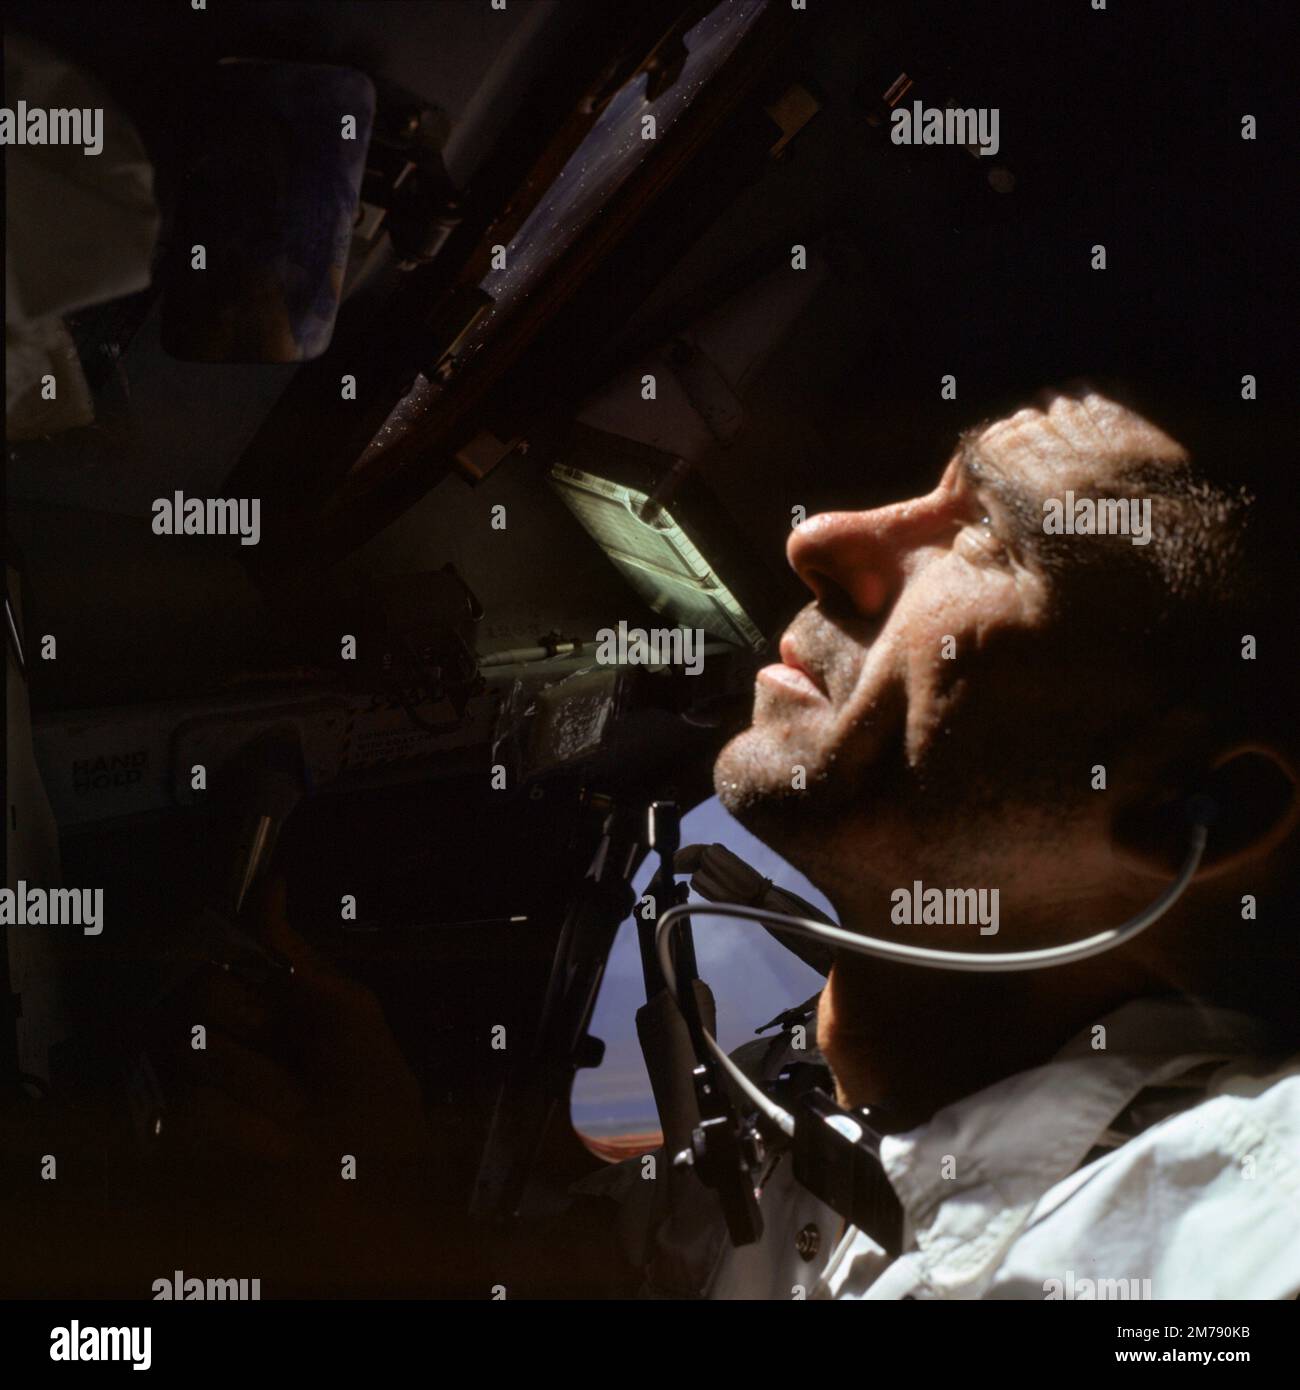 Orbite de la terre, orbite de la terre. 11 octobre 1968. Walter Cunningham, astronaute de première ligne de l'équipe Apollo VII de la NASA, regarde la fenêtre pendant le premier jour de vol dans la capsule Apollo, 11 octobre 1968 in Earth Orbit. Cunningham meurt 4 janvier 2023 à l'âge de 90 ans, le dernier membre survivant de la mission Apollo 7 de la NASA. Banque D'Images